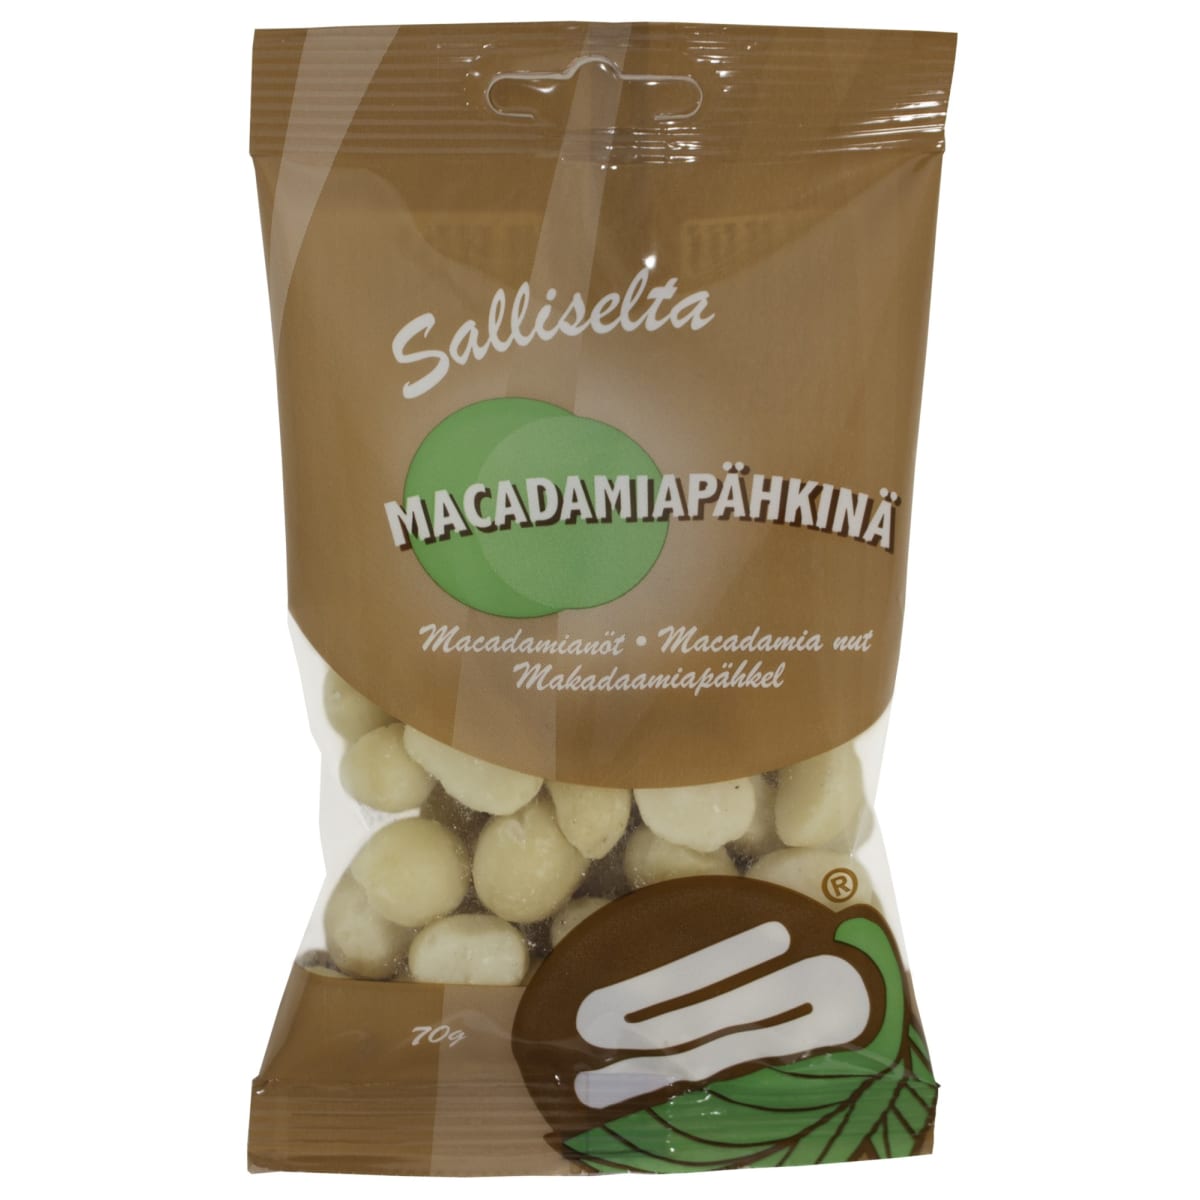 Salliselta 70 g macadamiapähkinä  verkkokauppa